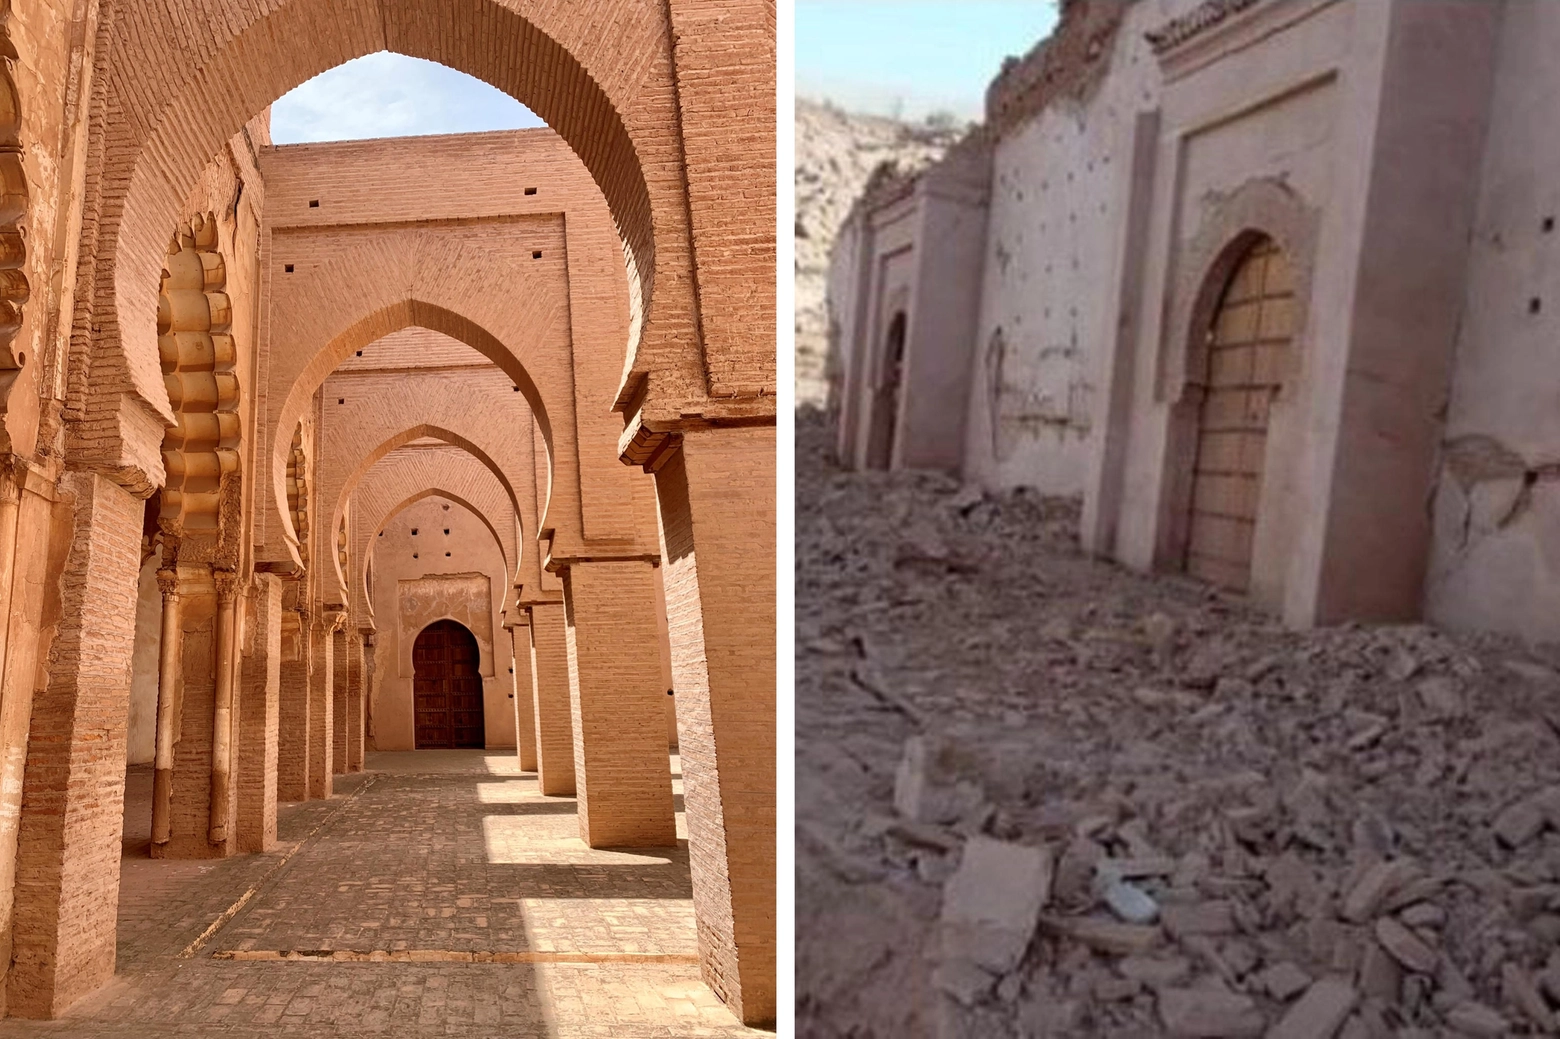 La moschea di Tinmel sull'Atlante prima e dopo il terremoto (Ansa)